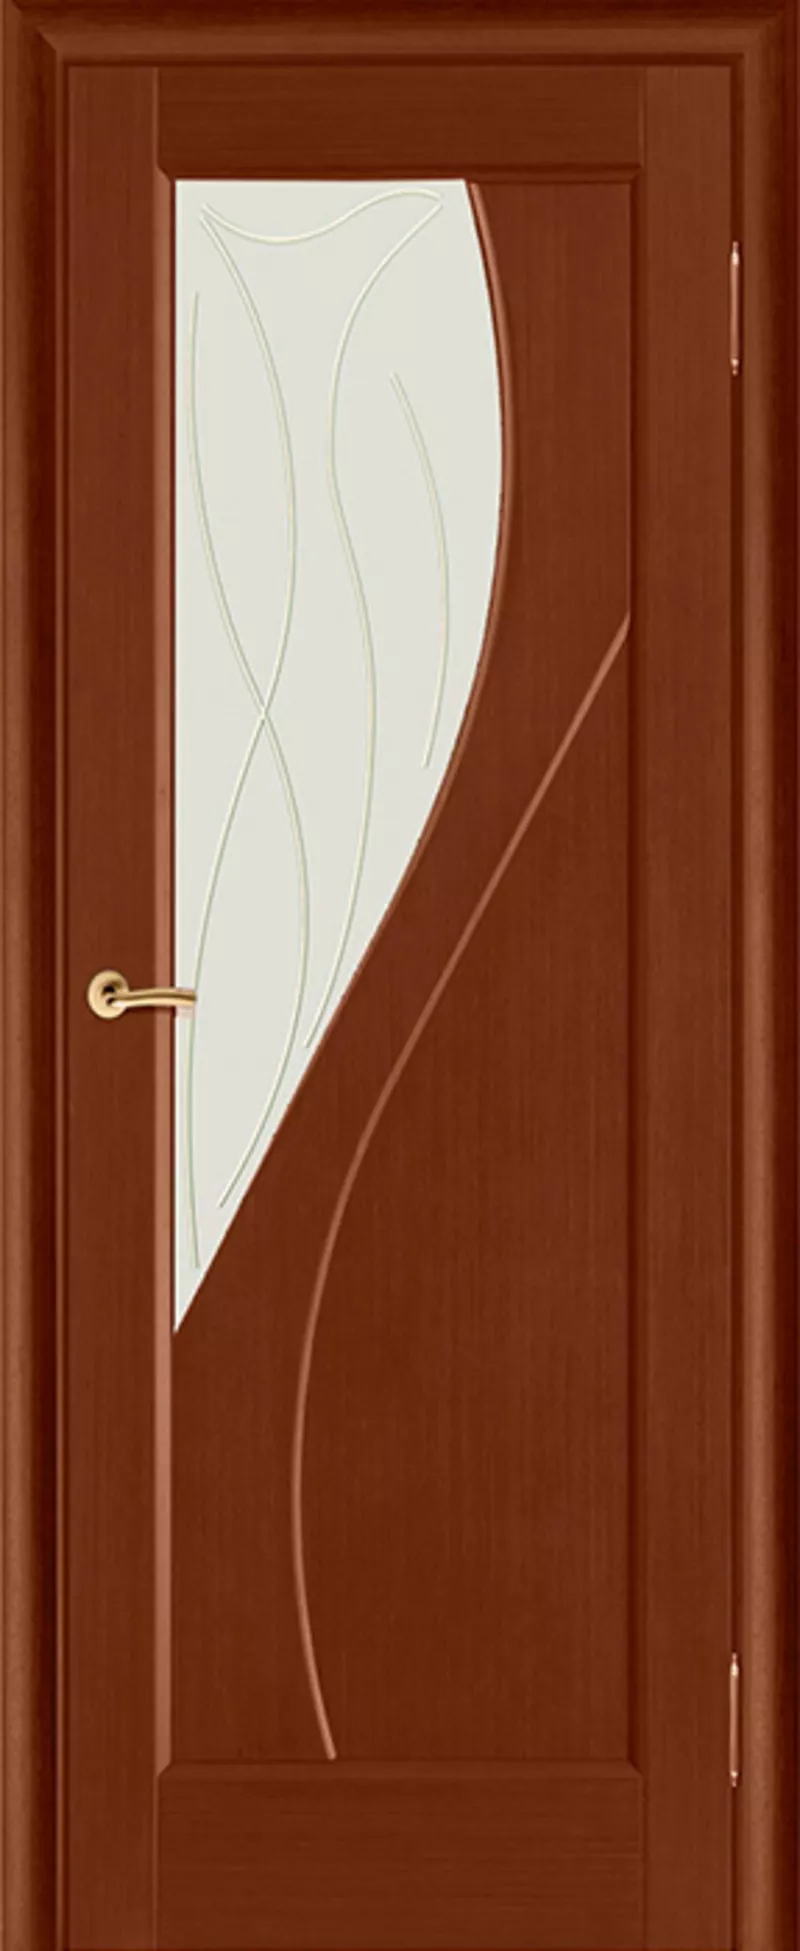 Шпонированные двери от 196 руб. за комплект. Ручки в подарок. 5